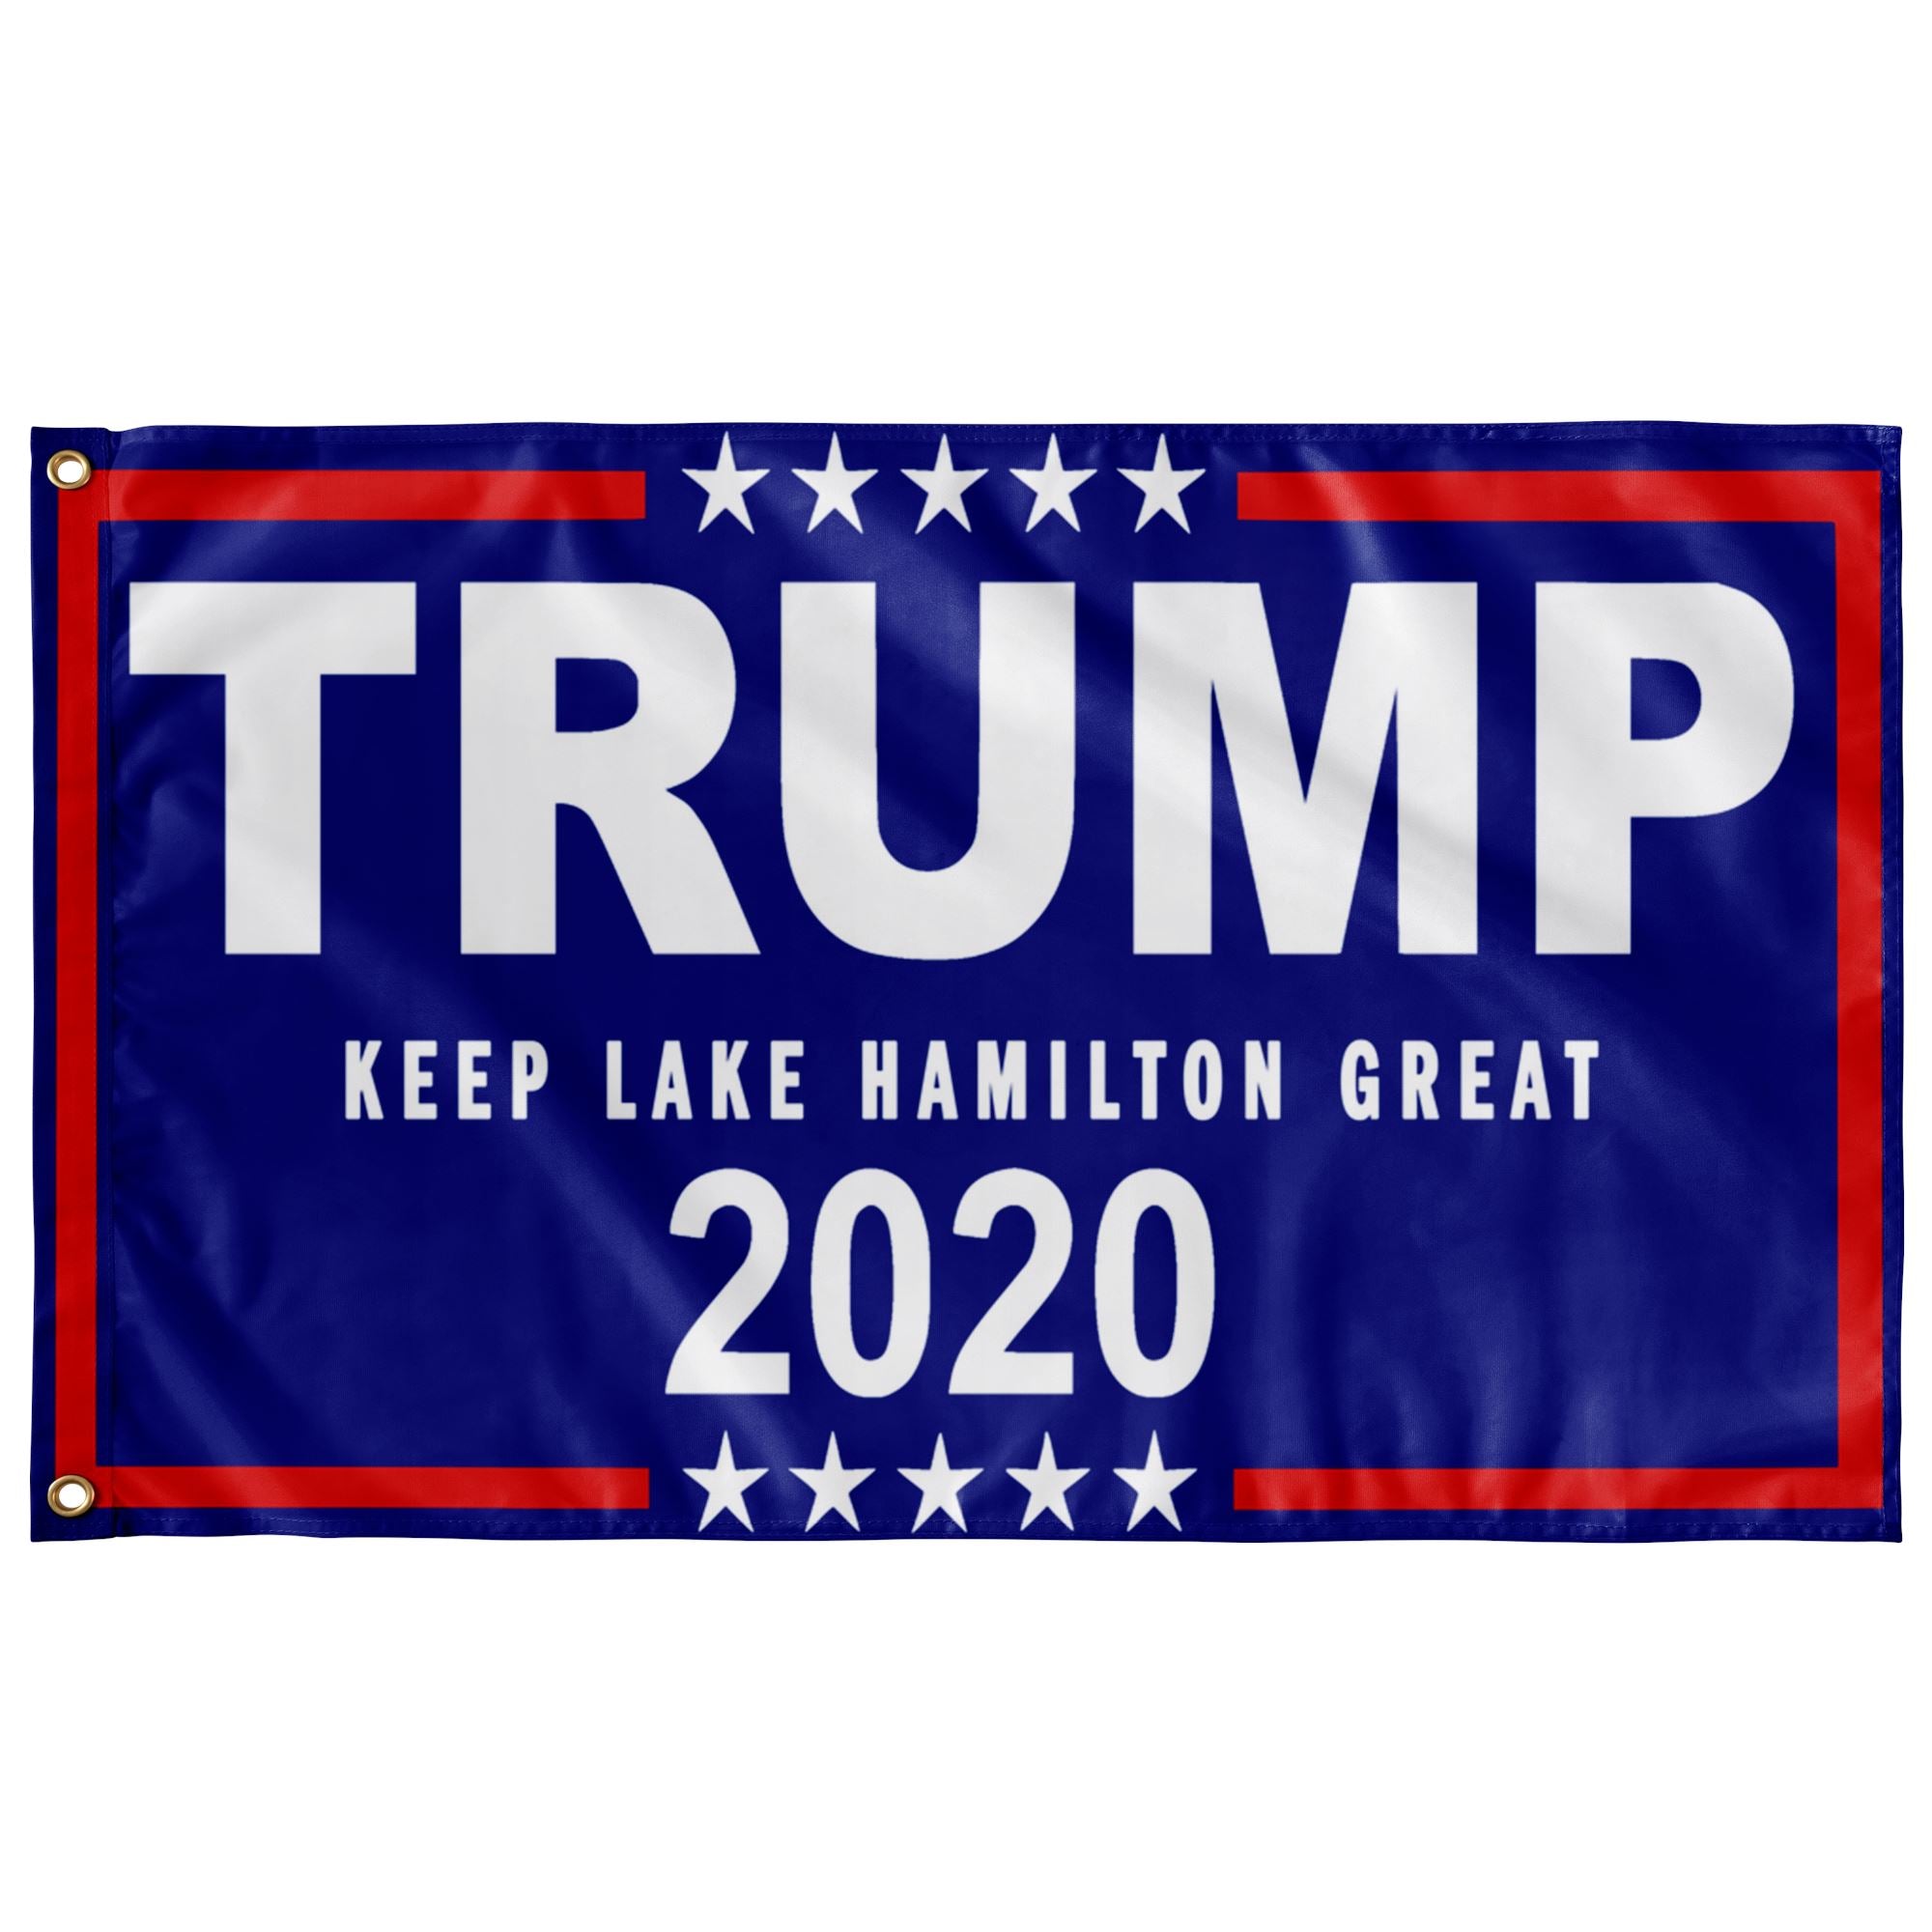 Trump Boat Flag - Keep Lake Hamilton Great - Houseboat Kings